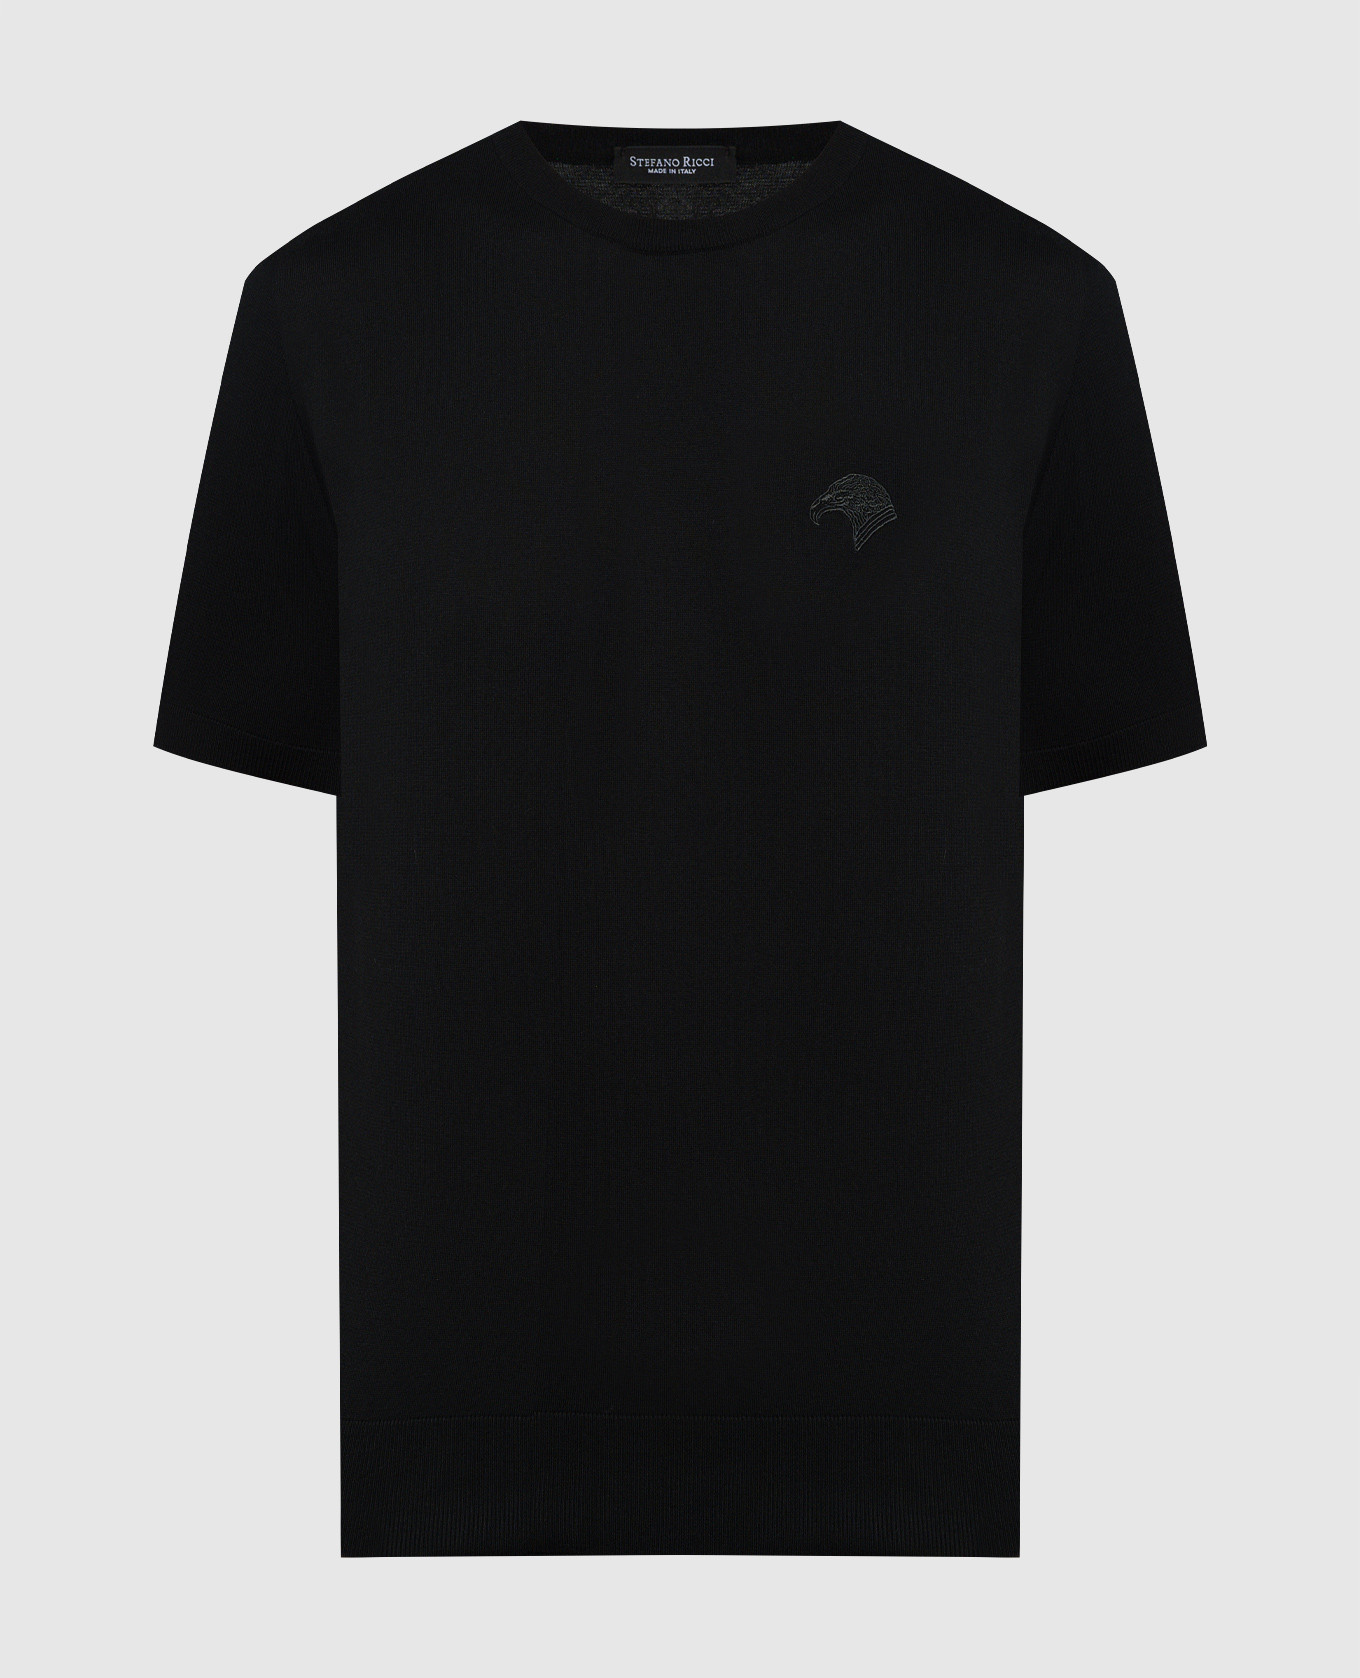 Черная футболка с вышивкой логотипа эмблемы.